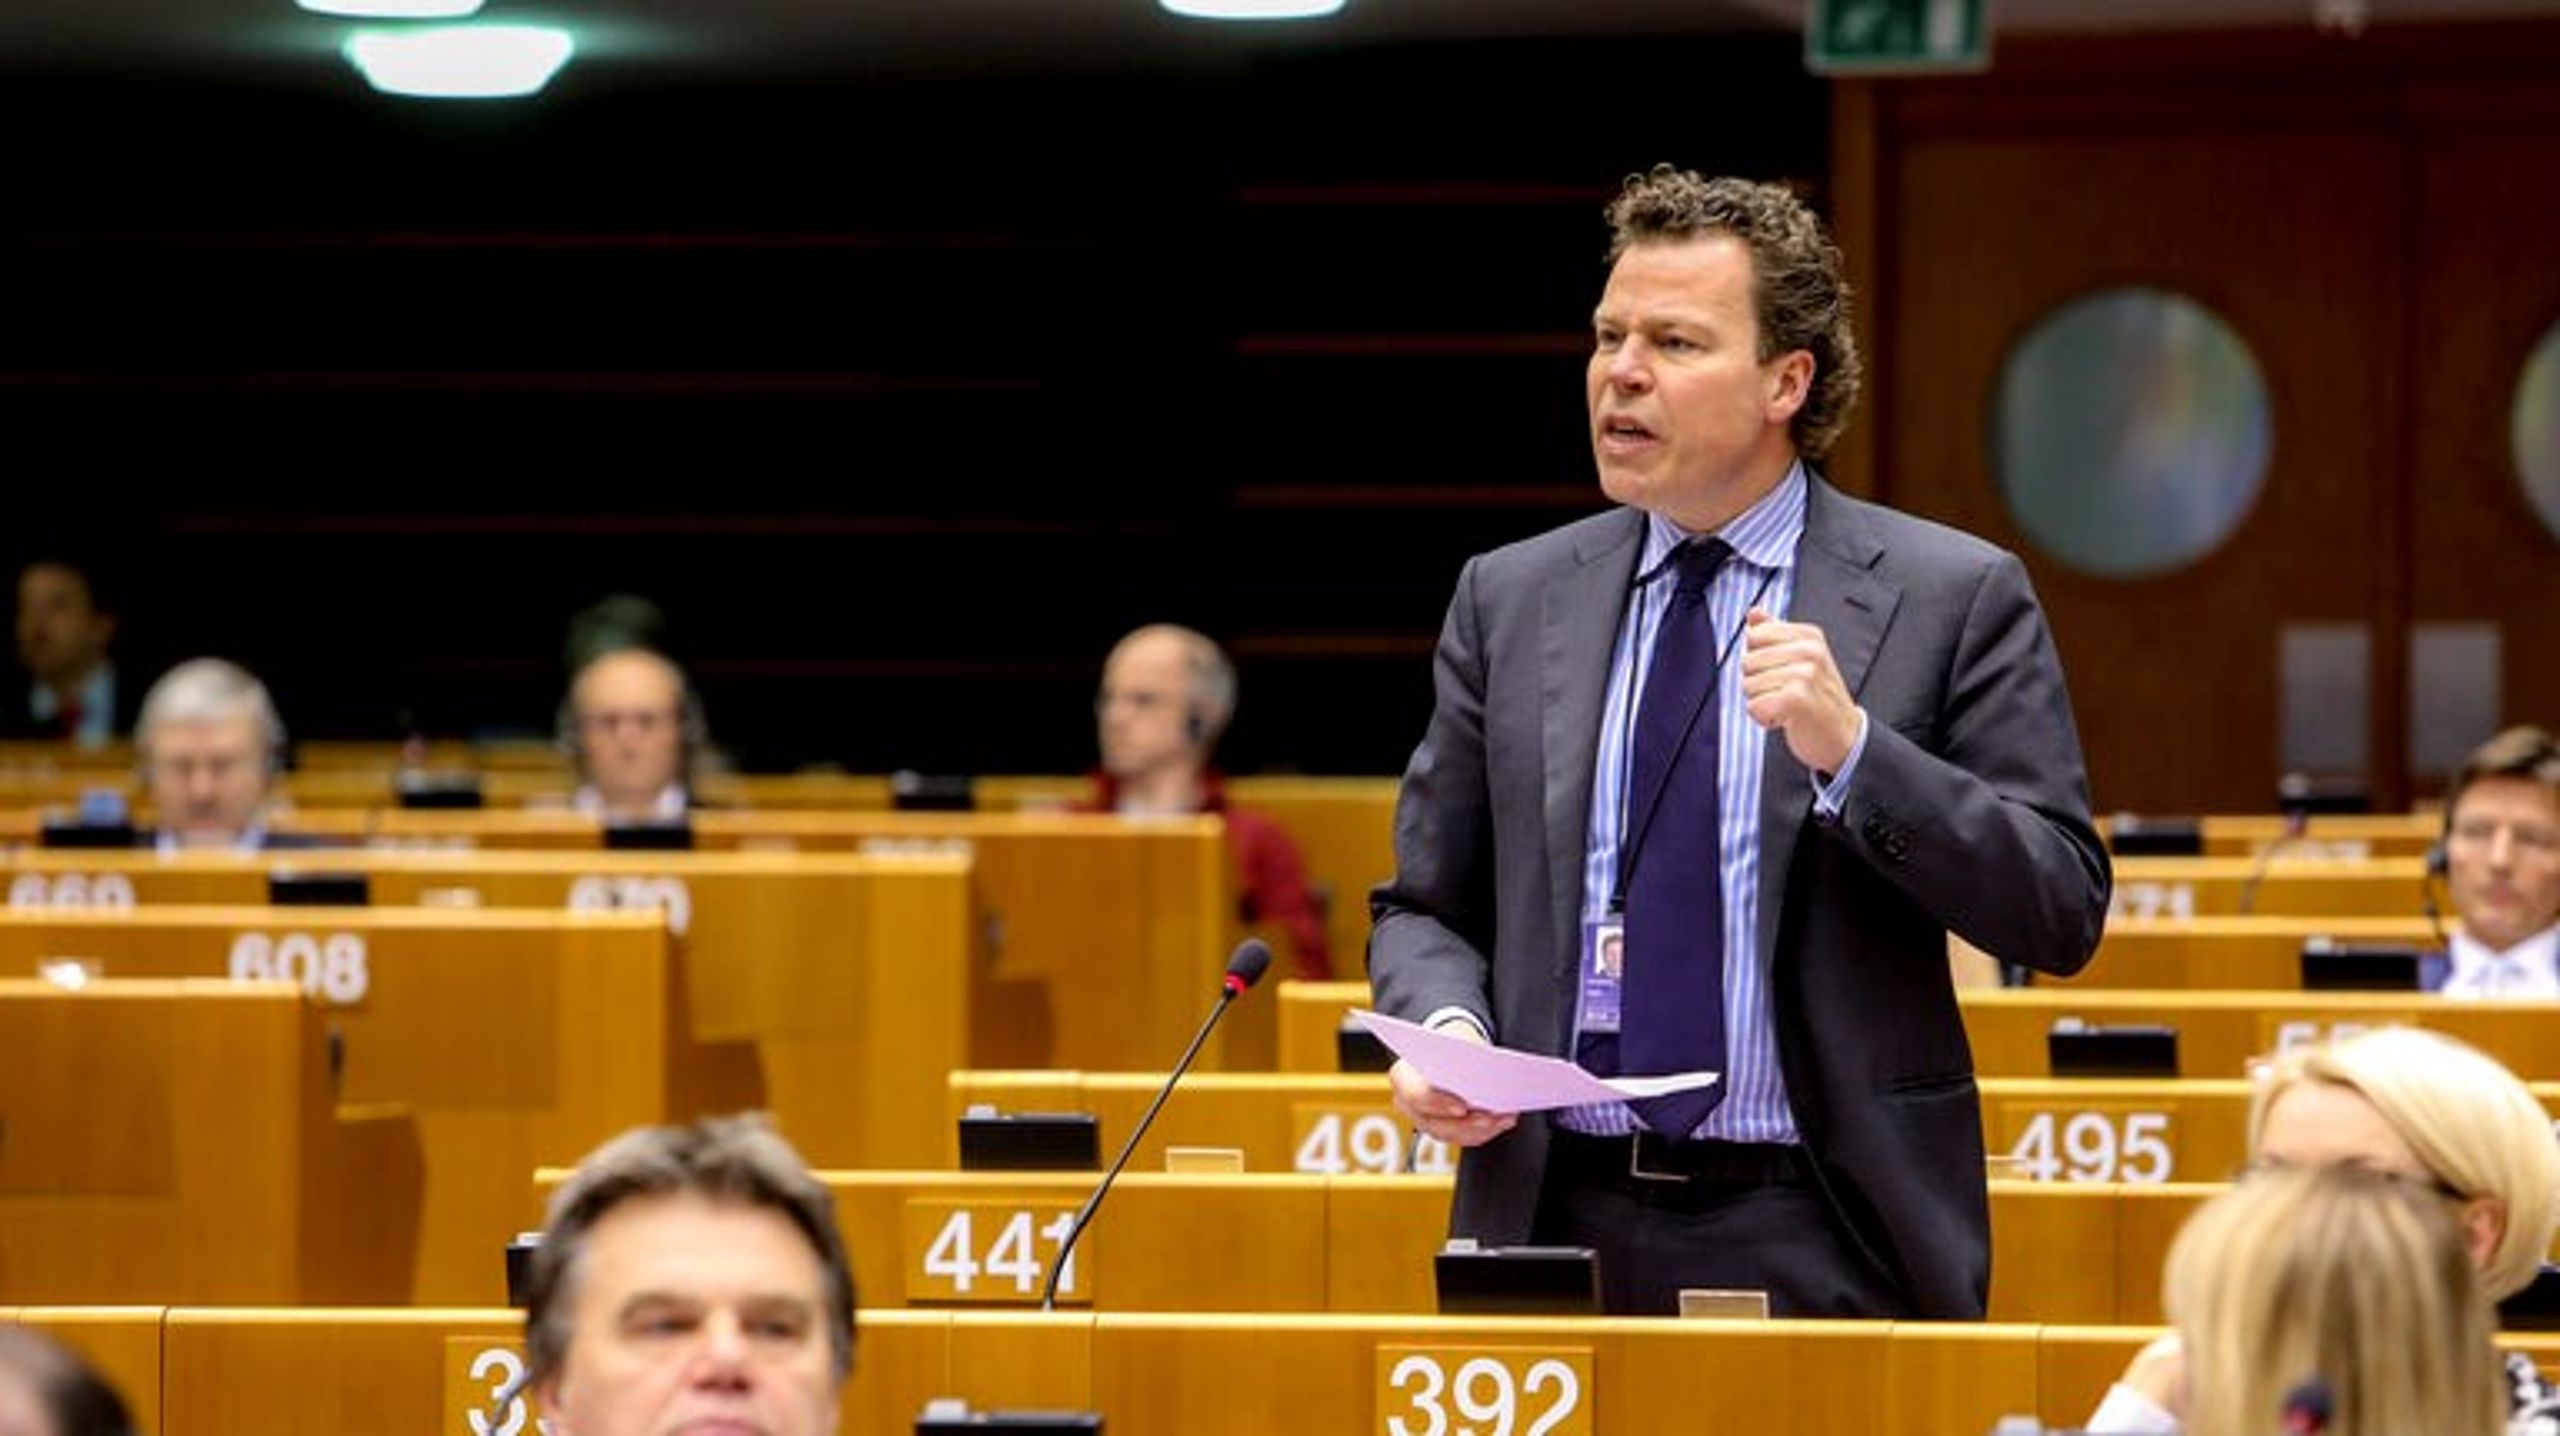 Morten Helveg Petersen har siddet i Europa-Parlamentet for Radikale Venstre siden 2014. Han har tidligere siddet i Folketinget og været direktør i Foreningen af Danske Interaktive Medier.